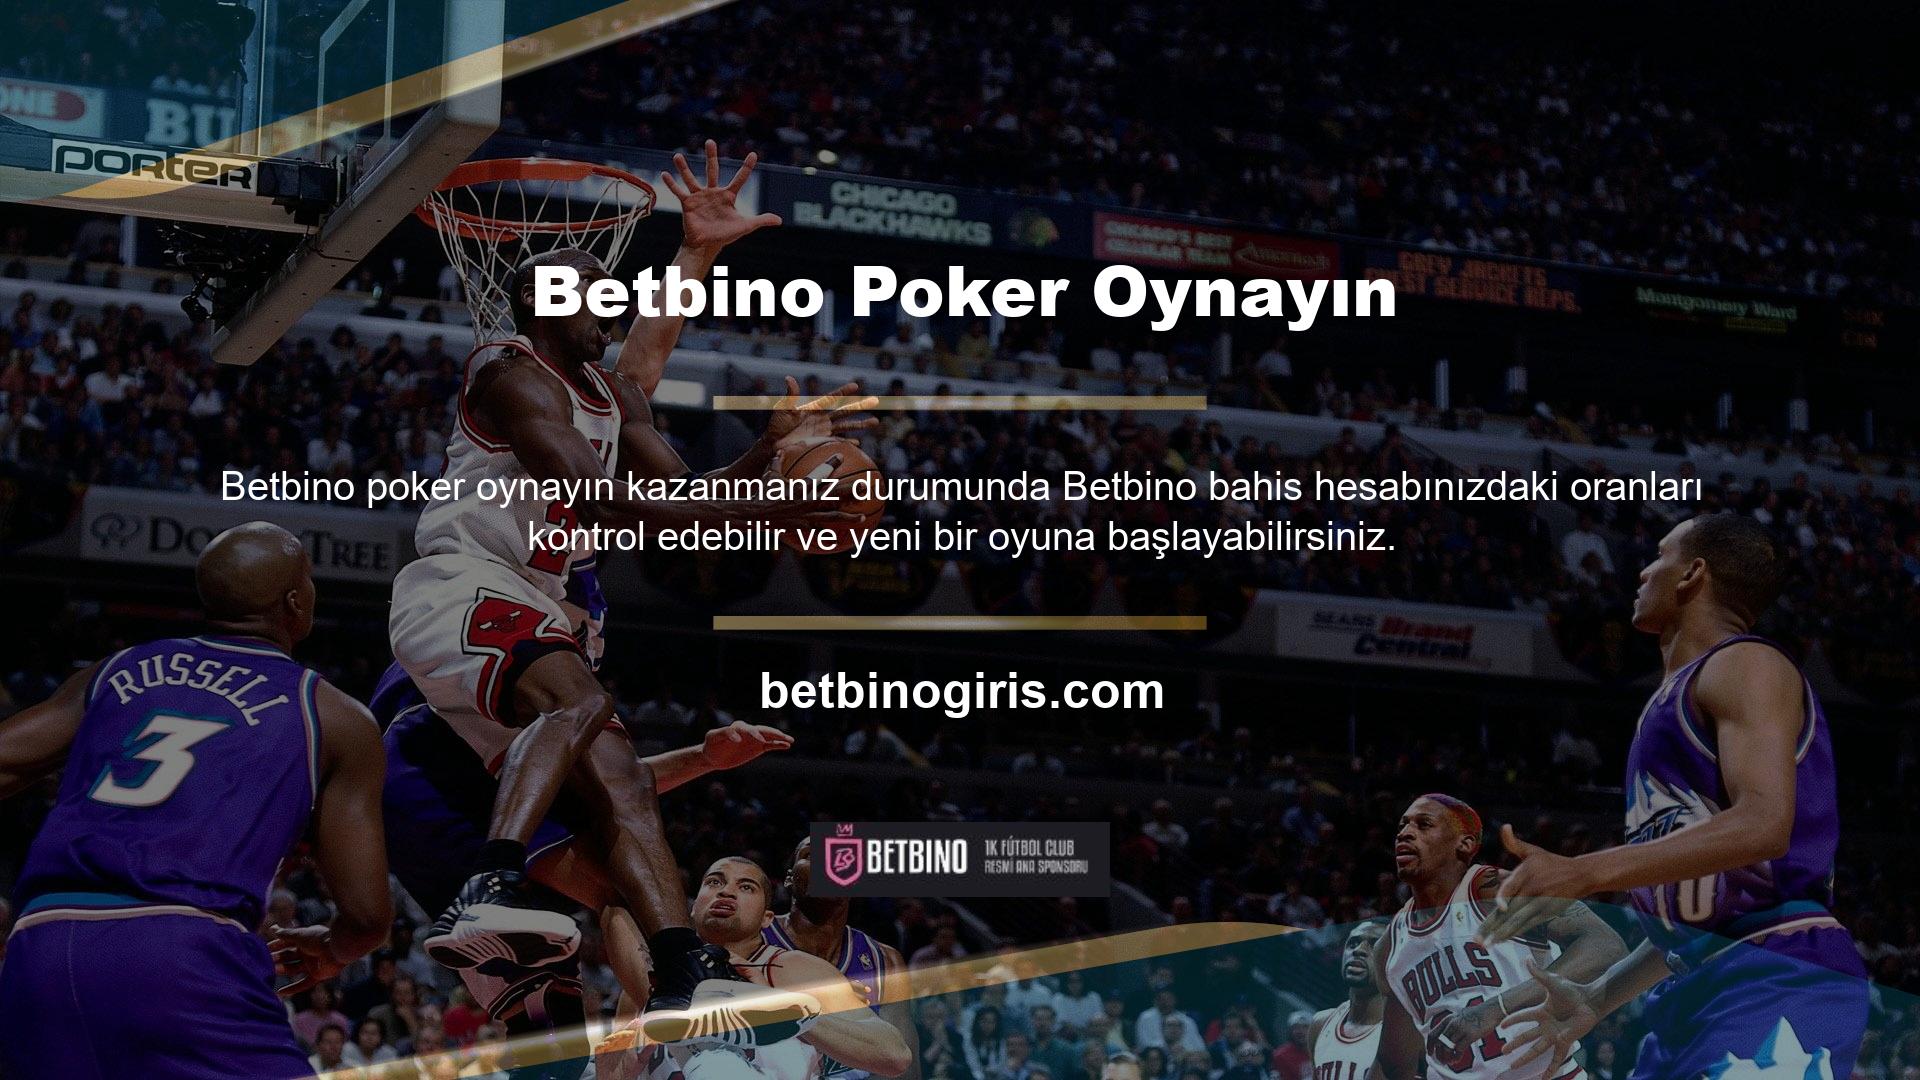 Aynı zamanda Betbino bahis sitesi her oyunun kazanma yüzdesine göre kişiye özel bonuslar da sunmaktadır